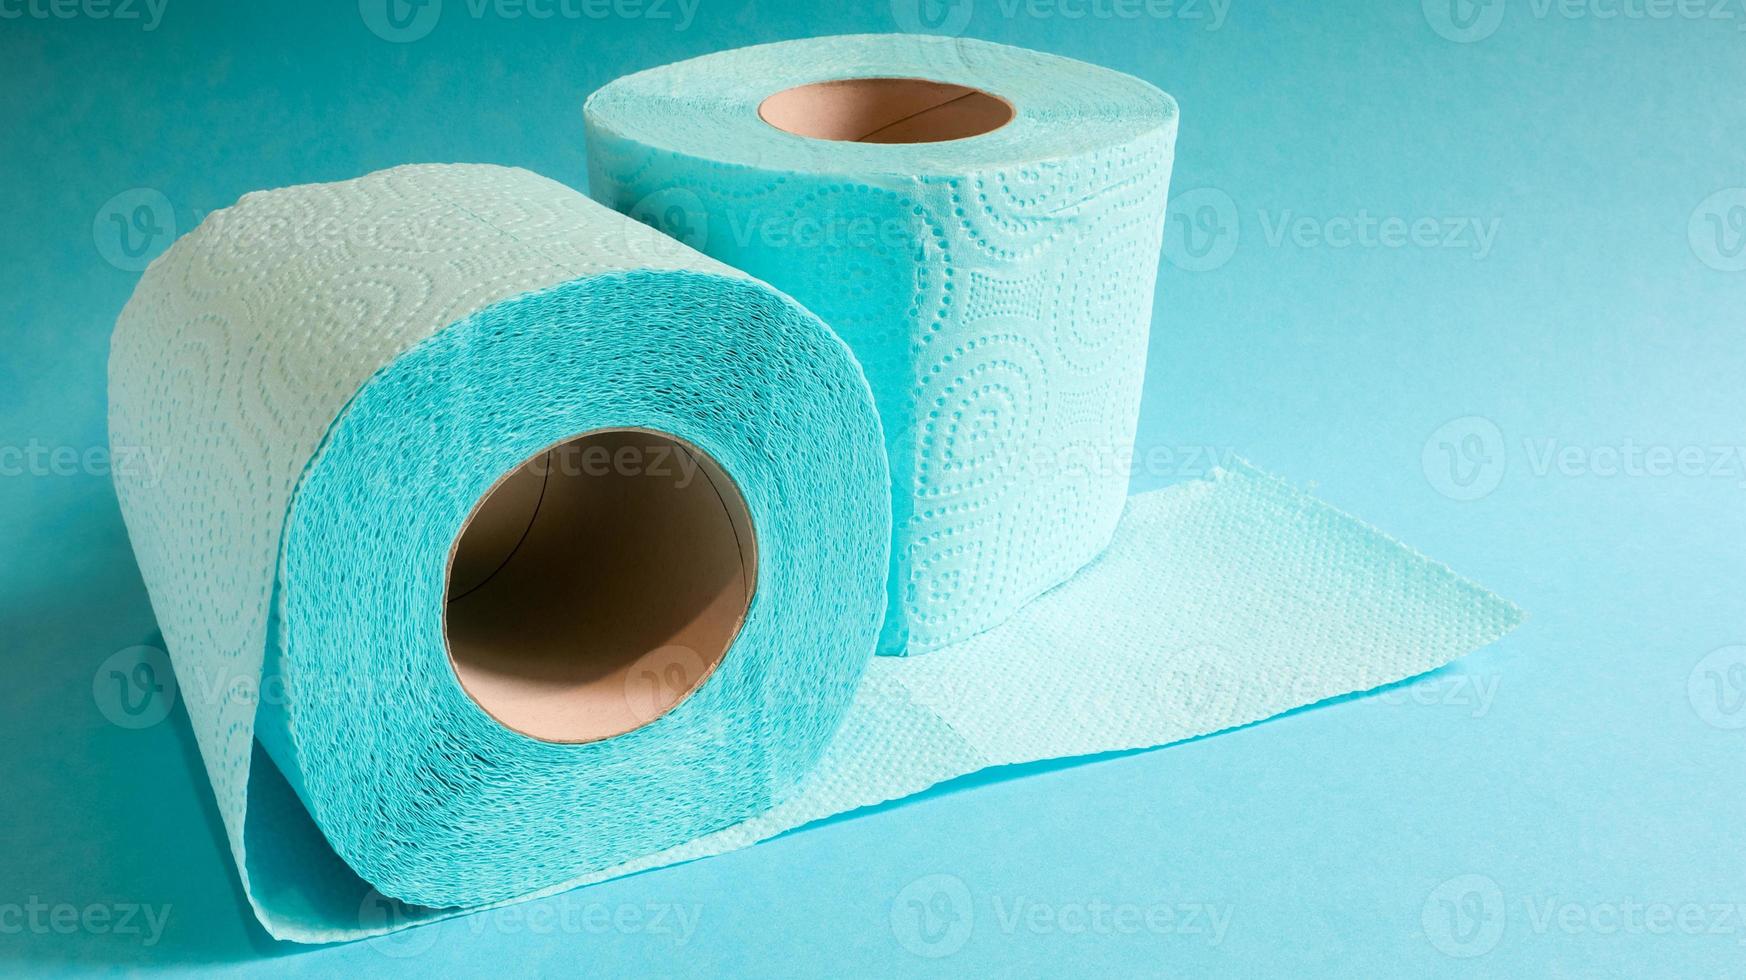 blauwe rol modern toiletpapier op een blauwe achtergrond. een papieren product op een kartonnen hoes, gebruikt voor sanitaire doeleinden van cellulose met uitsparingen om gemakkelijk te scheuren. reliëf tekening foto